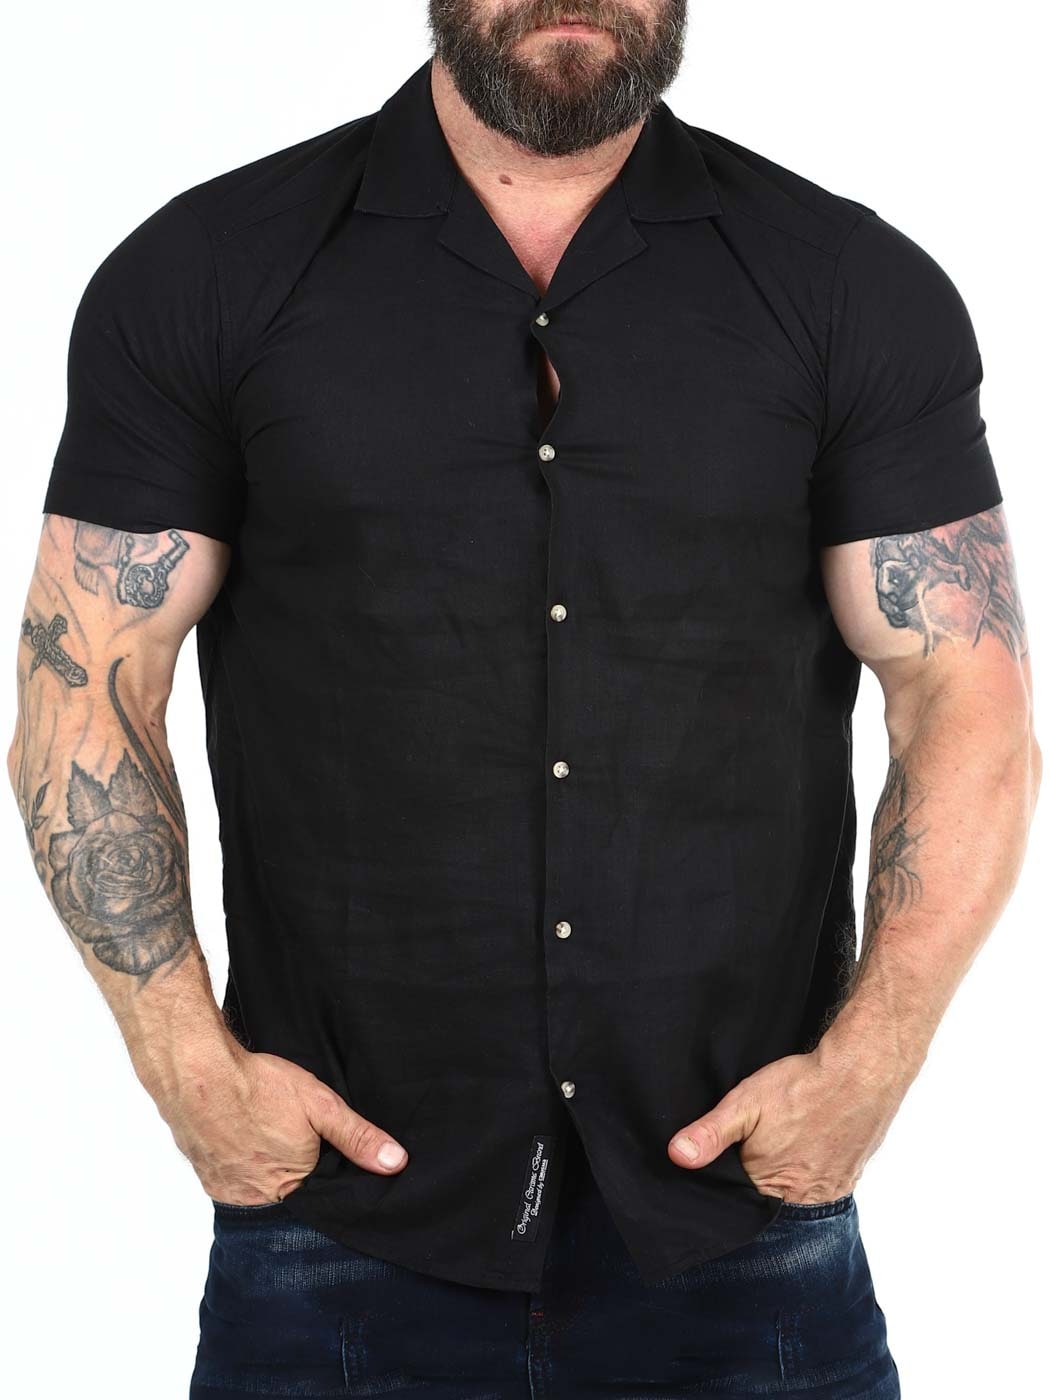 Coastal Short sleeve Shirt Black_1.jpg